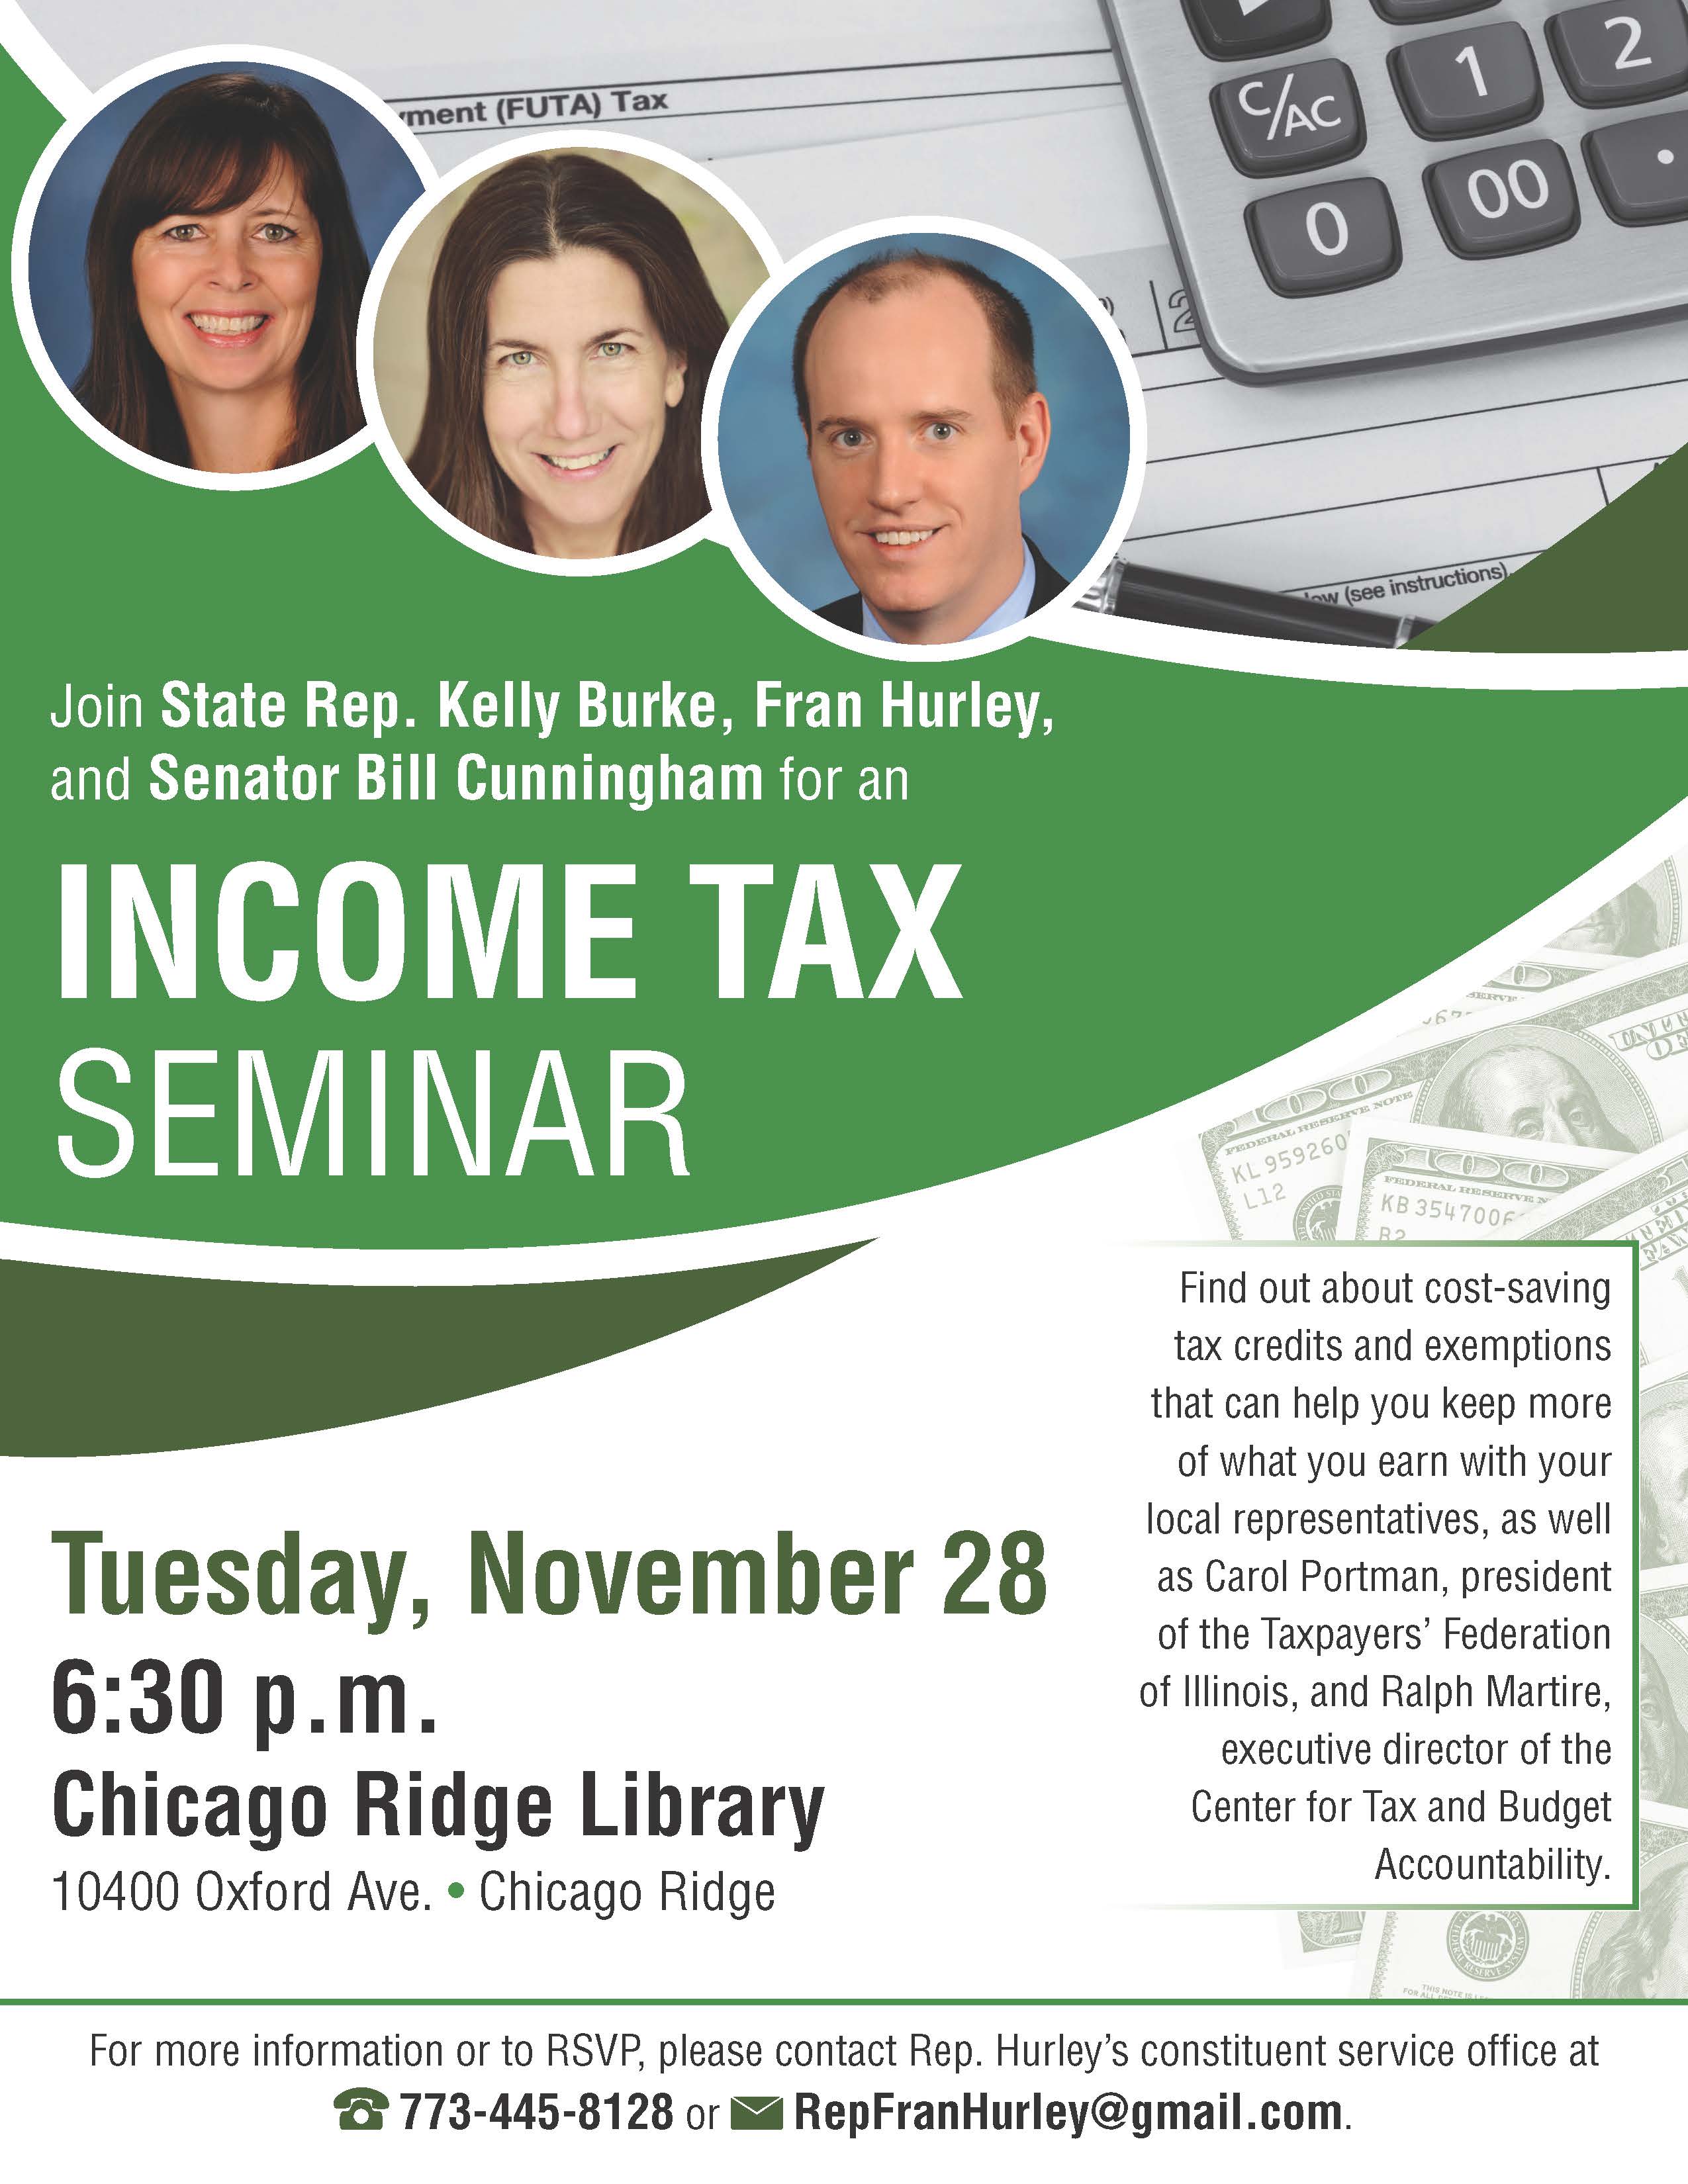 K Burke Income Tax Seminar 11 28 Page 1